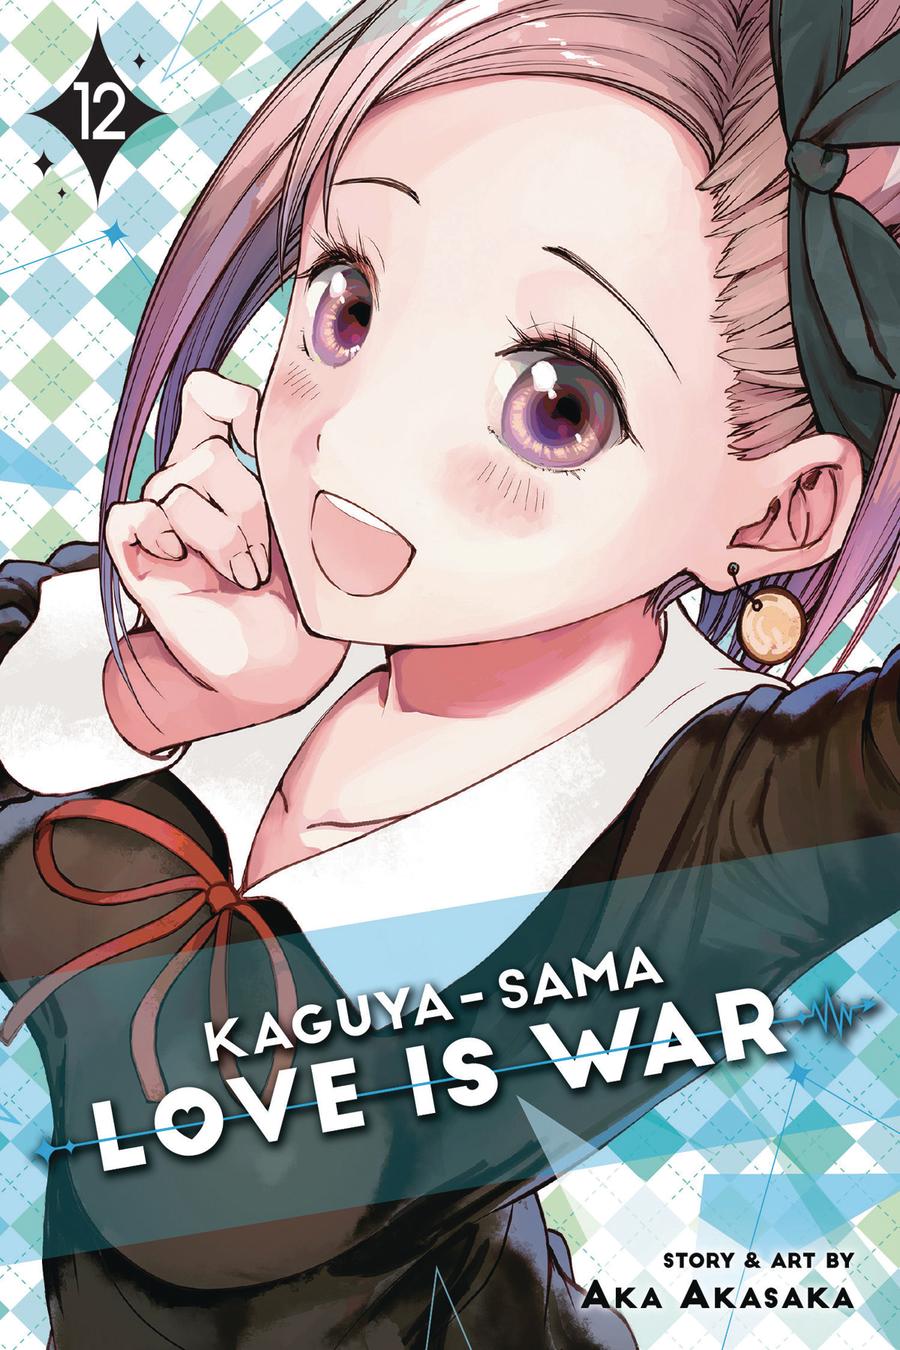 Kaguya-Sama Love Is War Vol 12 GN